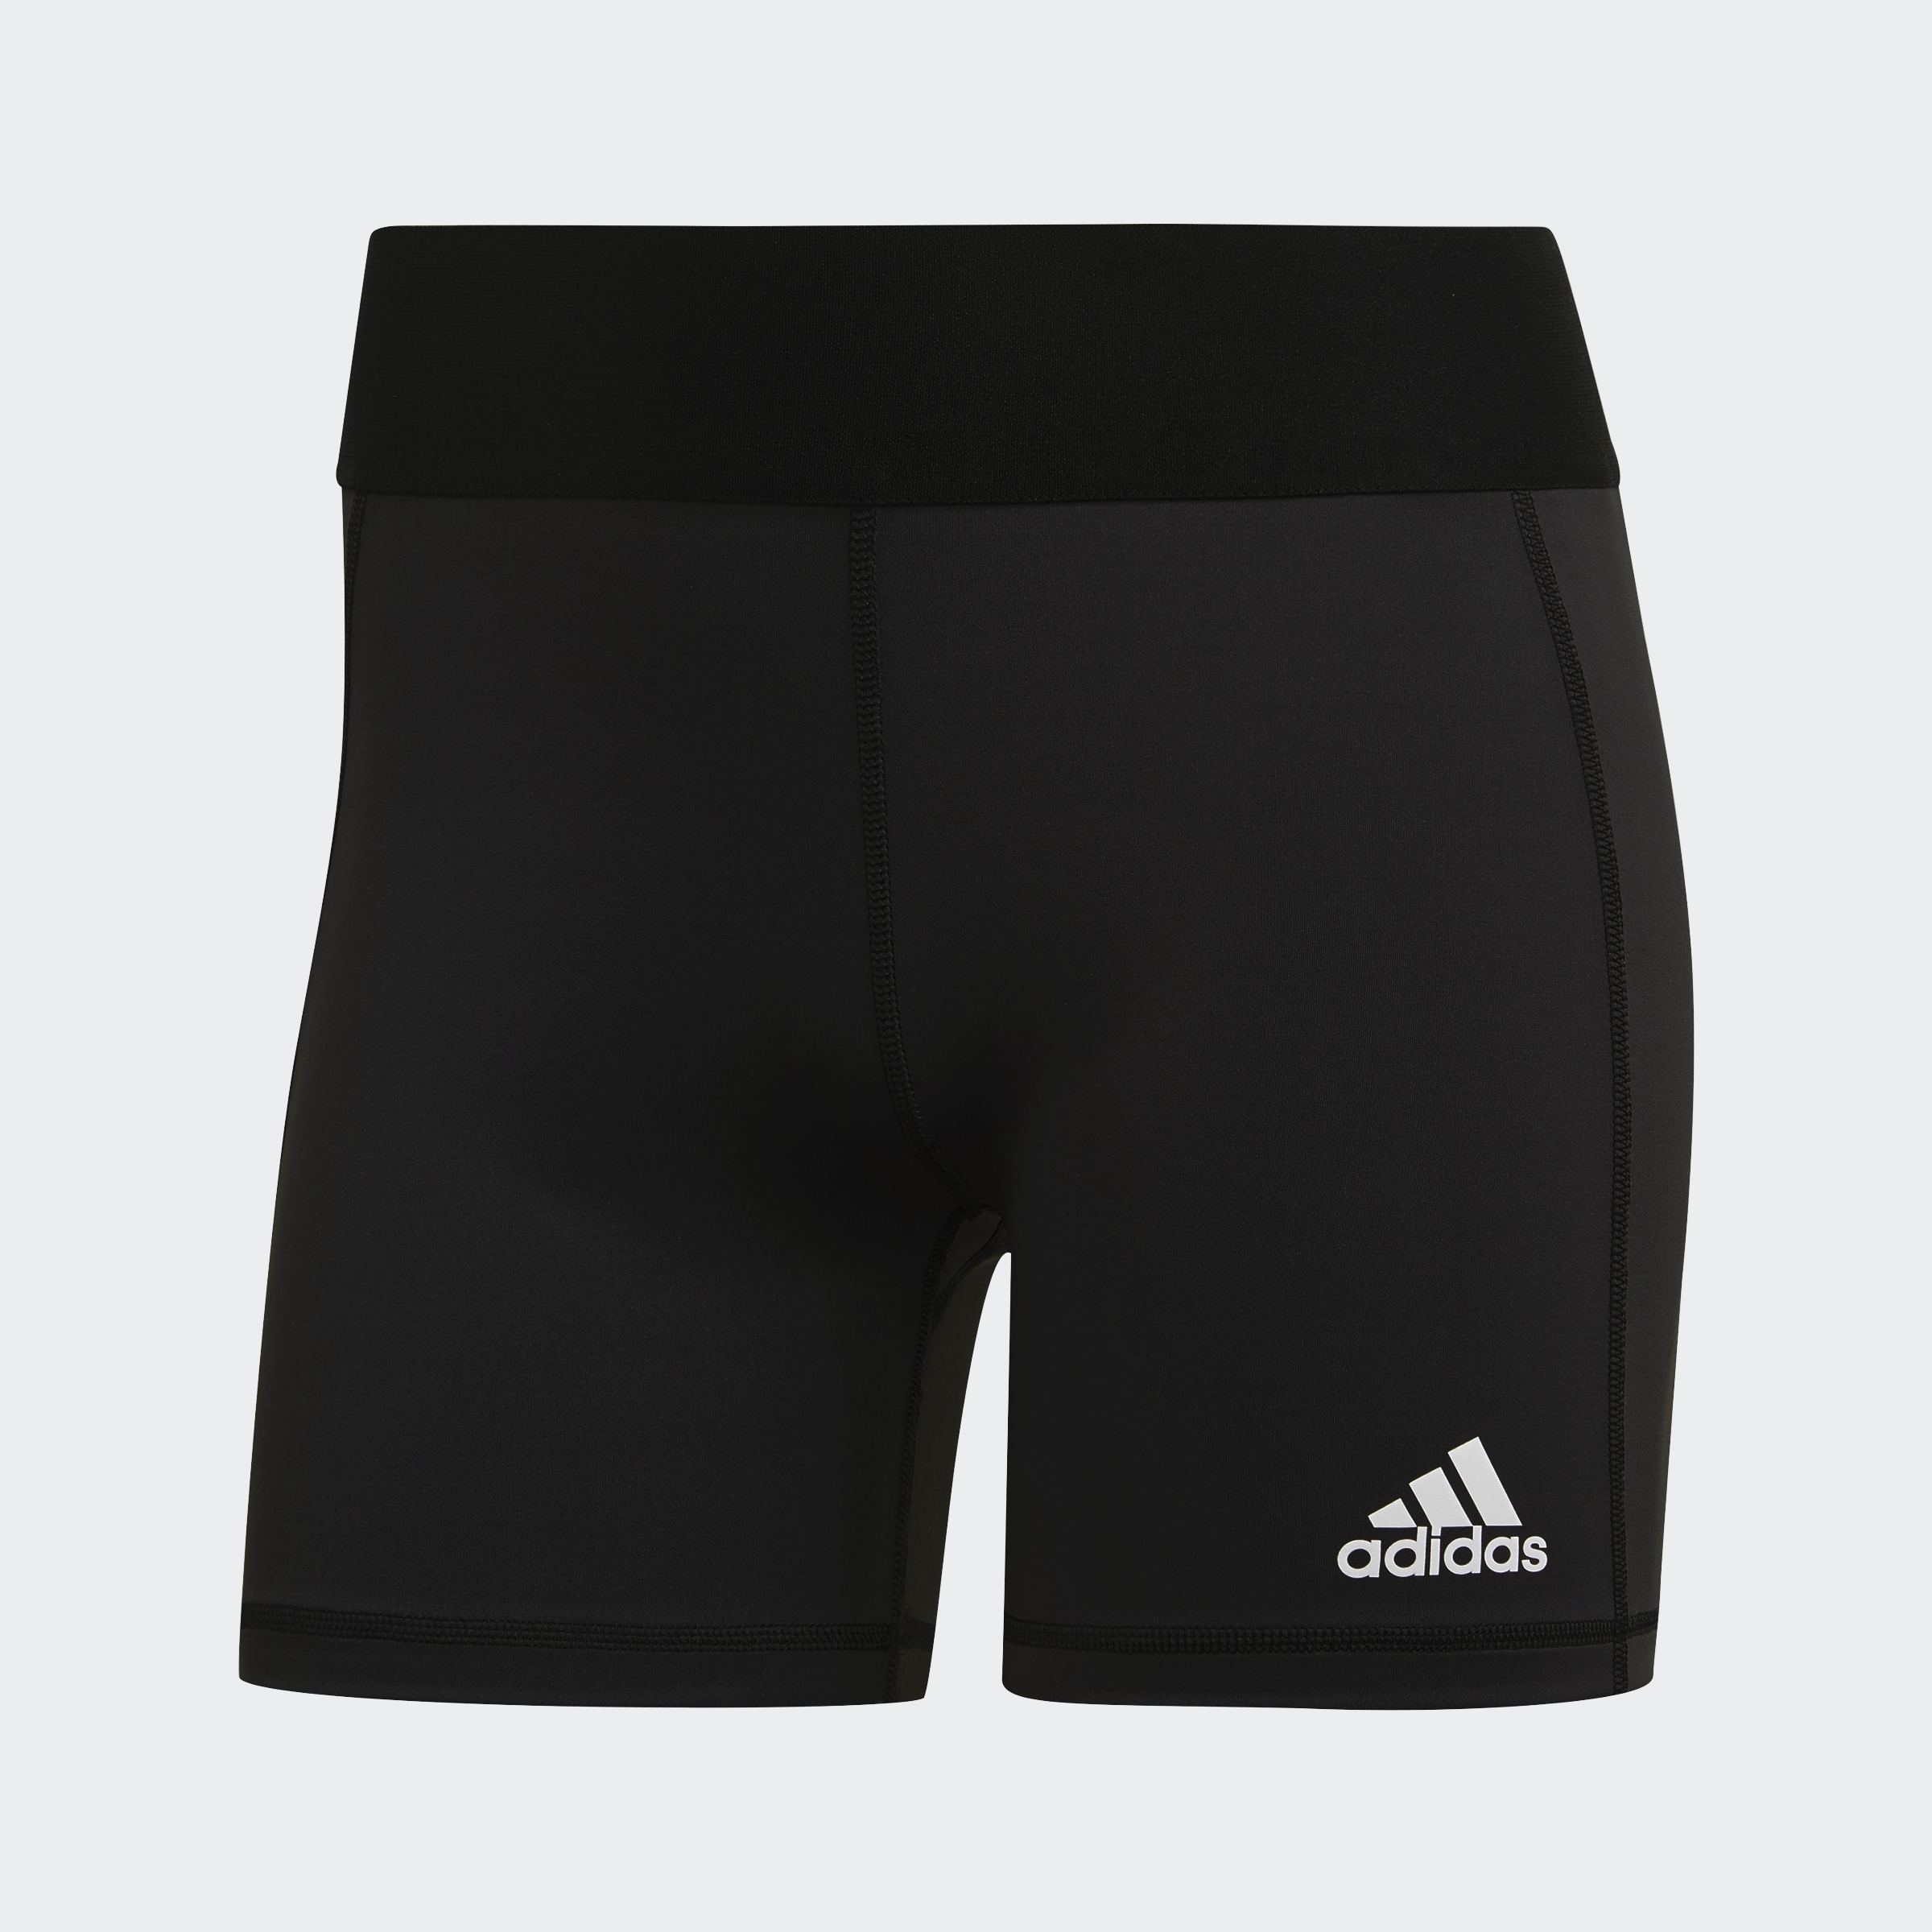 Adidas Volley Team 3. Волейбольные шорты. Волейбольные юбка шорты. Шорты для волейбола